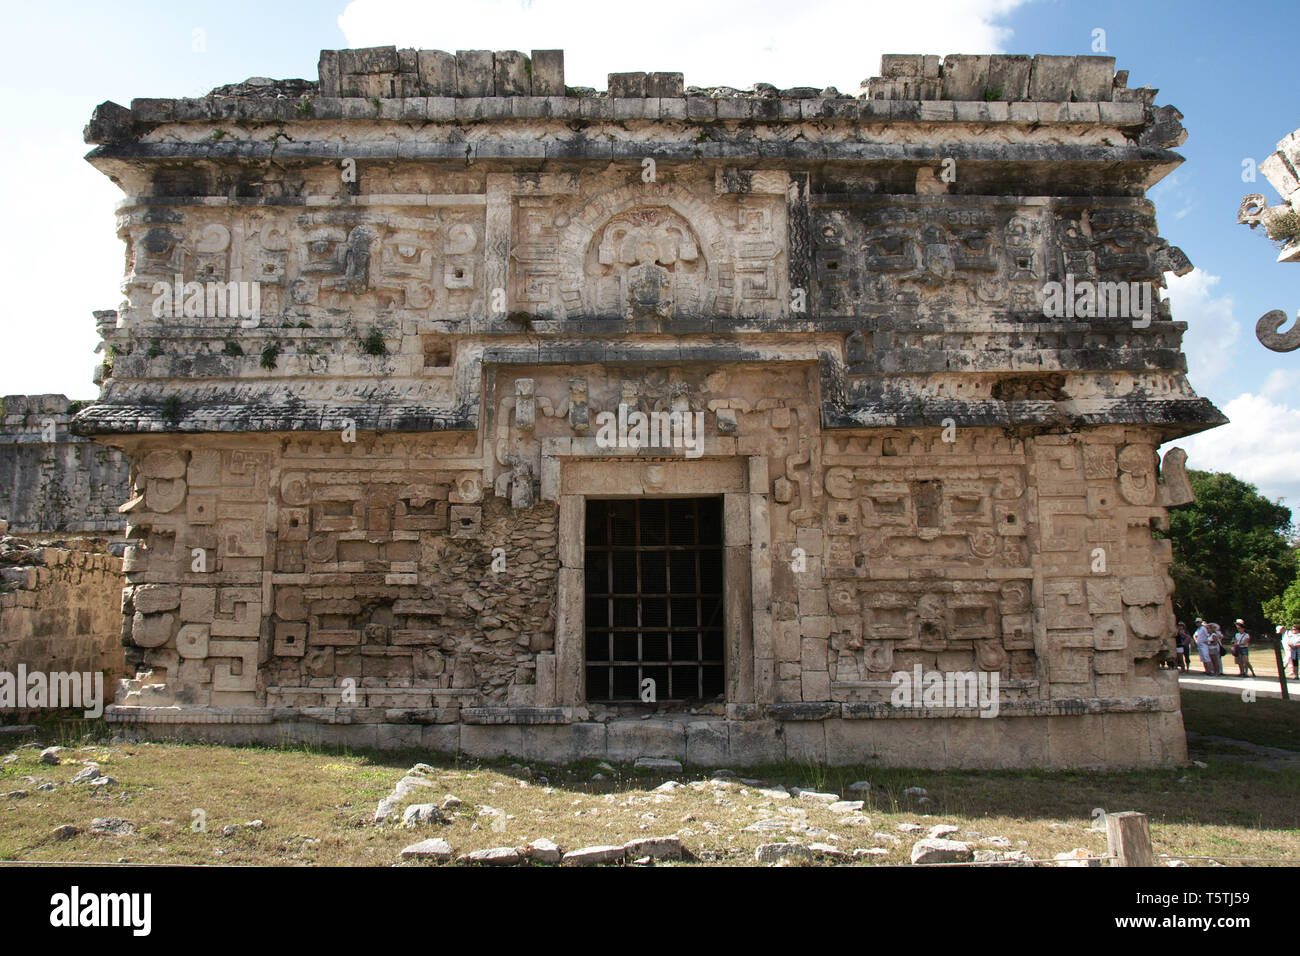 Blick auf die Ruinen der Maya auf der Chichen Itza Archäologische Stätte entfernt, die zum UNESCO-Weltkulturerbe gehört. Yucatan, Mexiko. Stockfoto